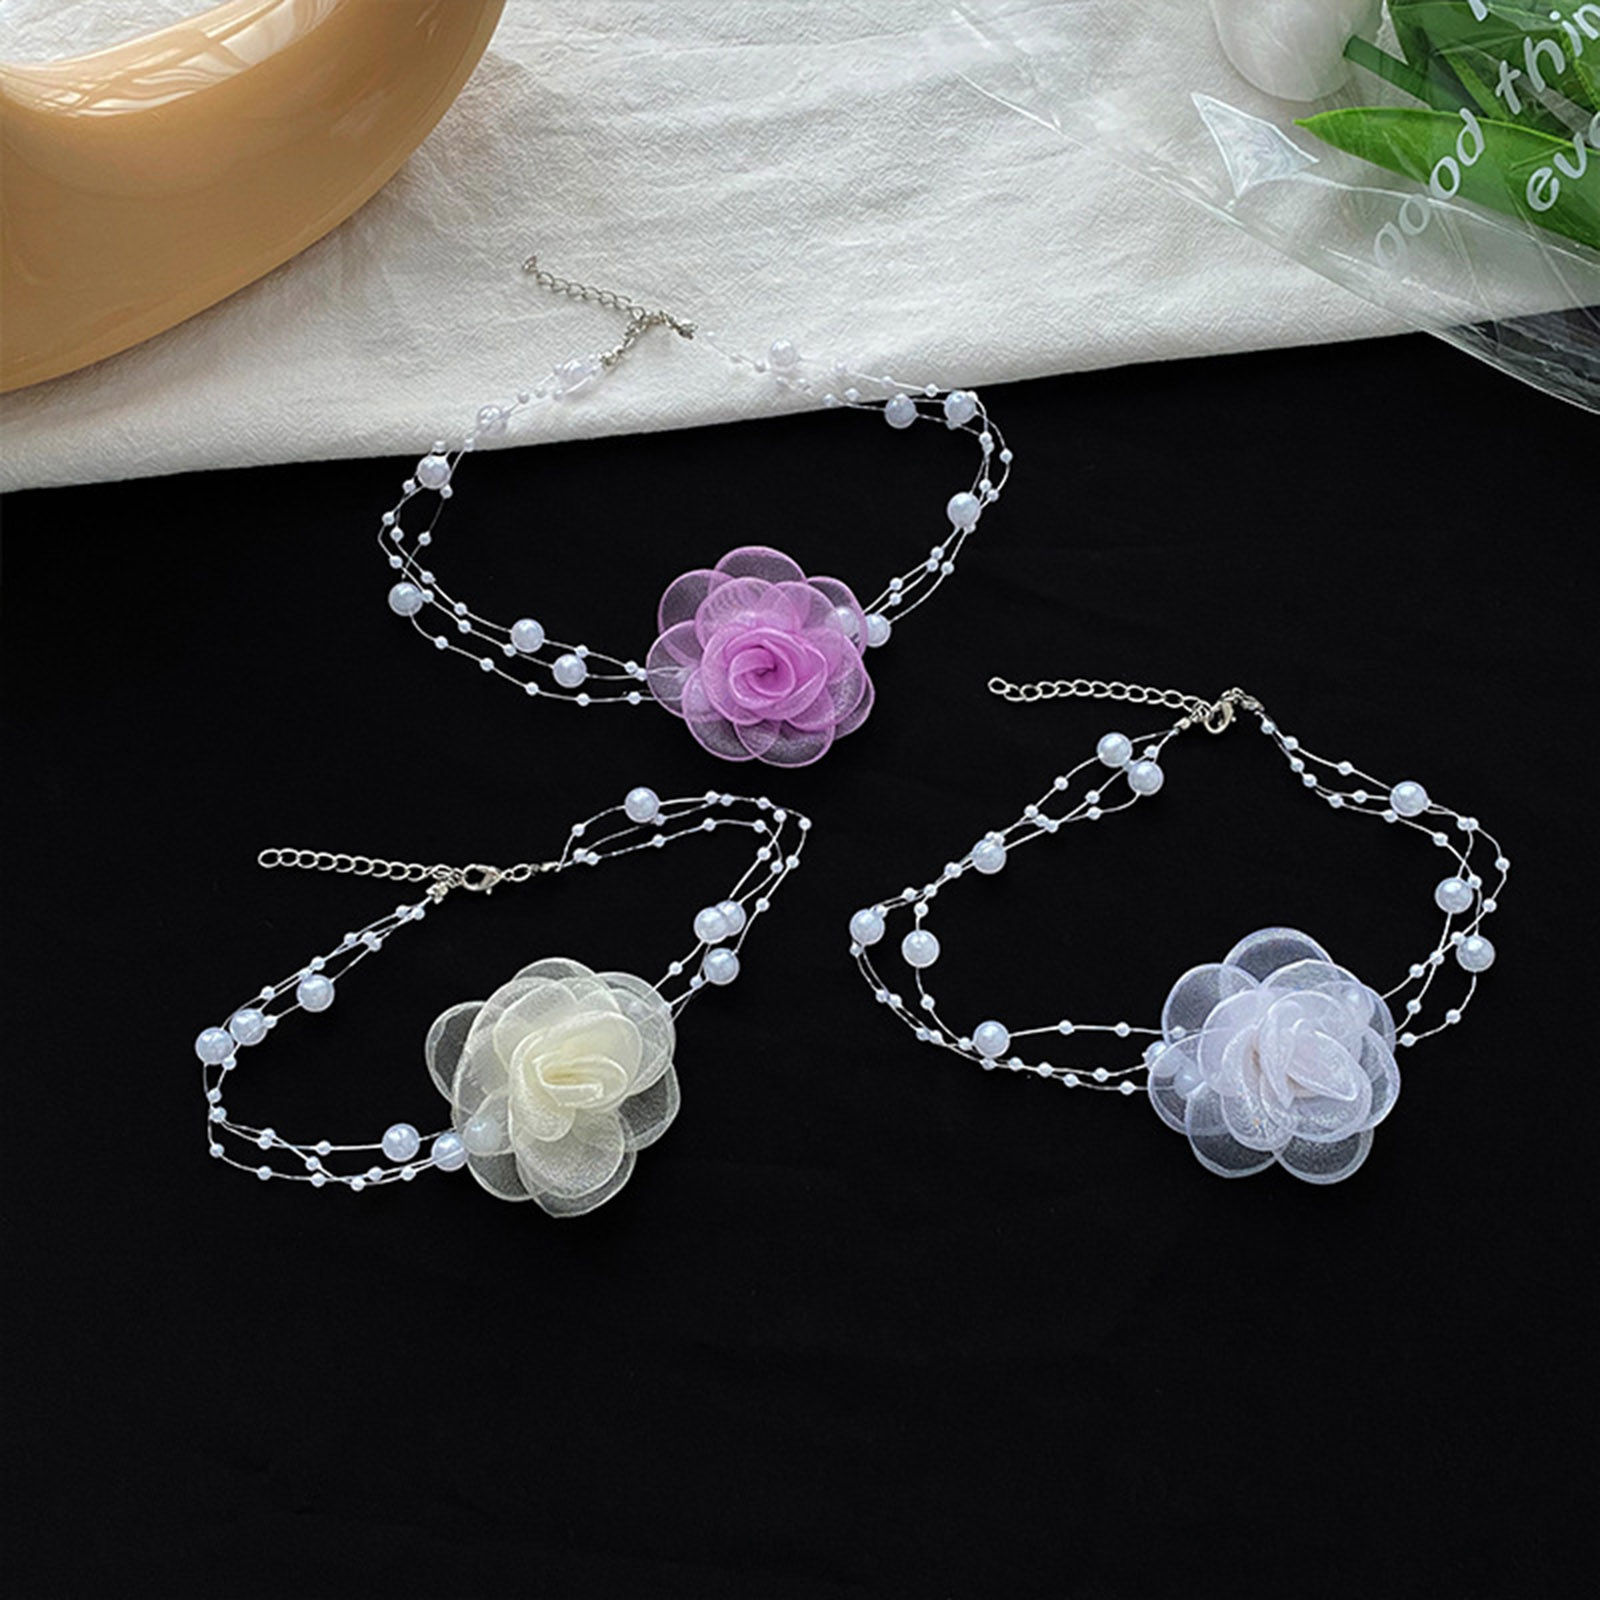 Bild von Gaze Hochzeit Choker Halskette Bunt Blumen 1 Strang